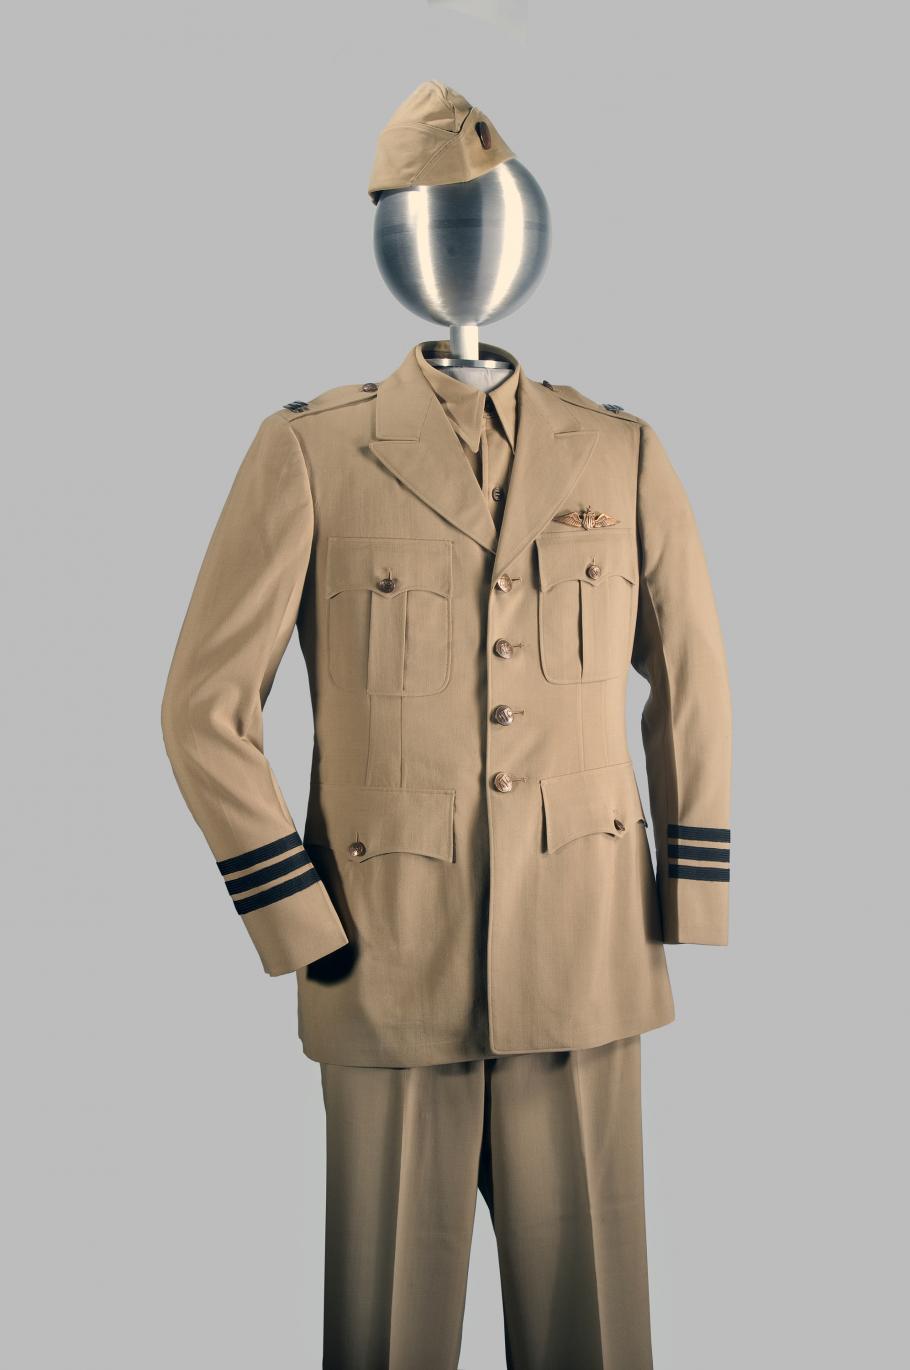 khaki uniform